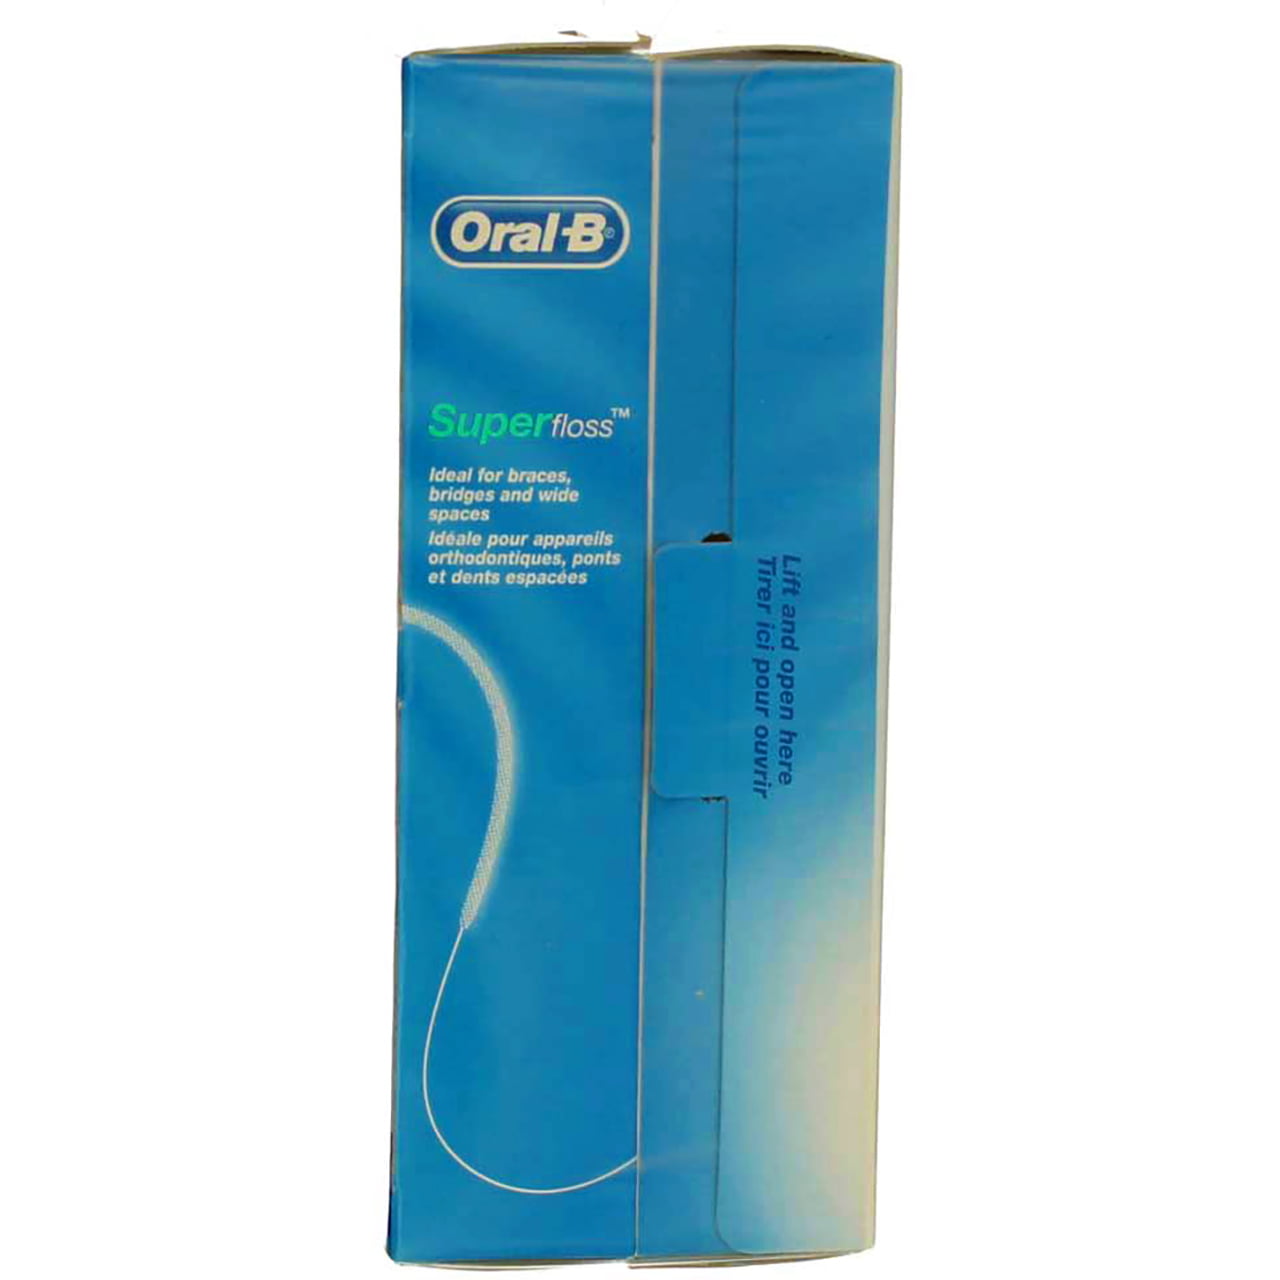 Oral-B SUPERfloss for braces, bridges, etc Mint 50 Pre-Cut Strands ( 2  boxes )